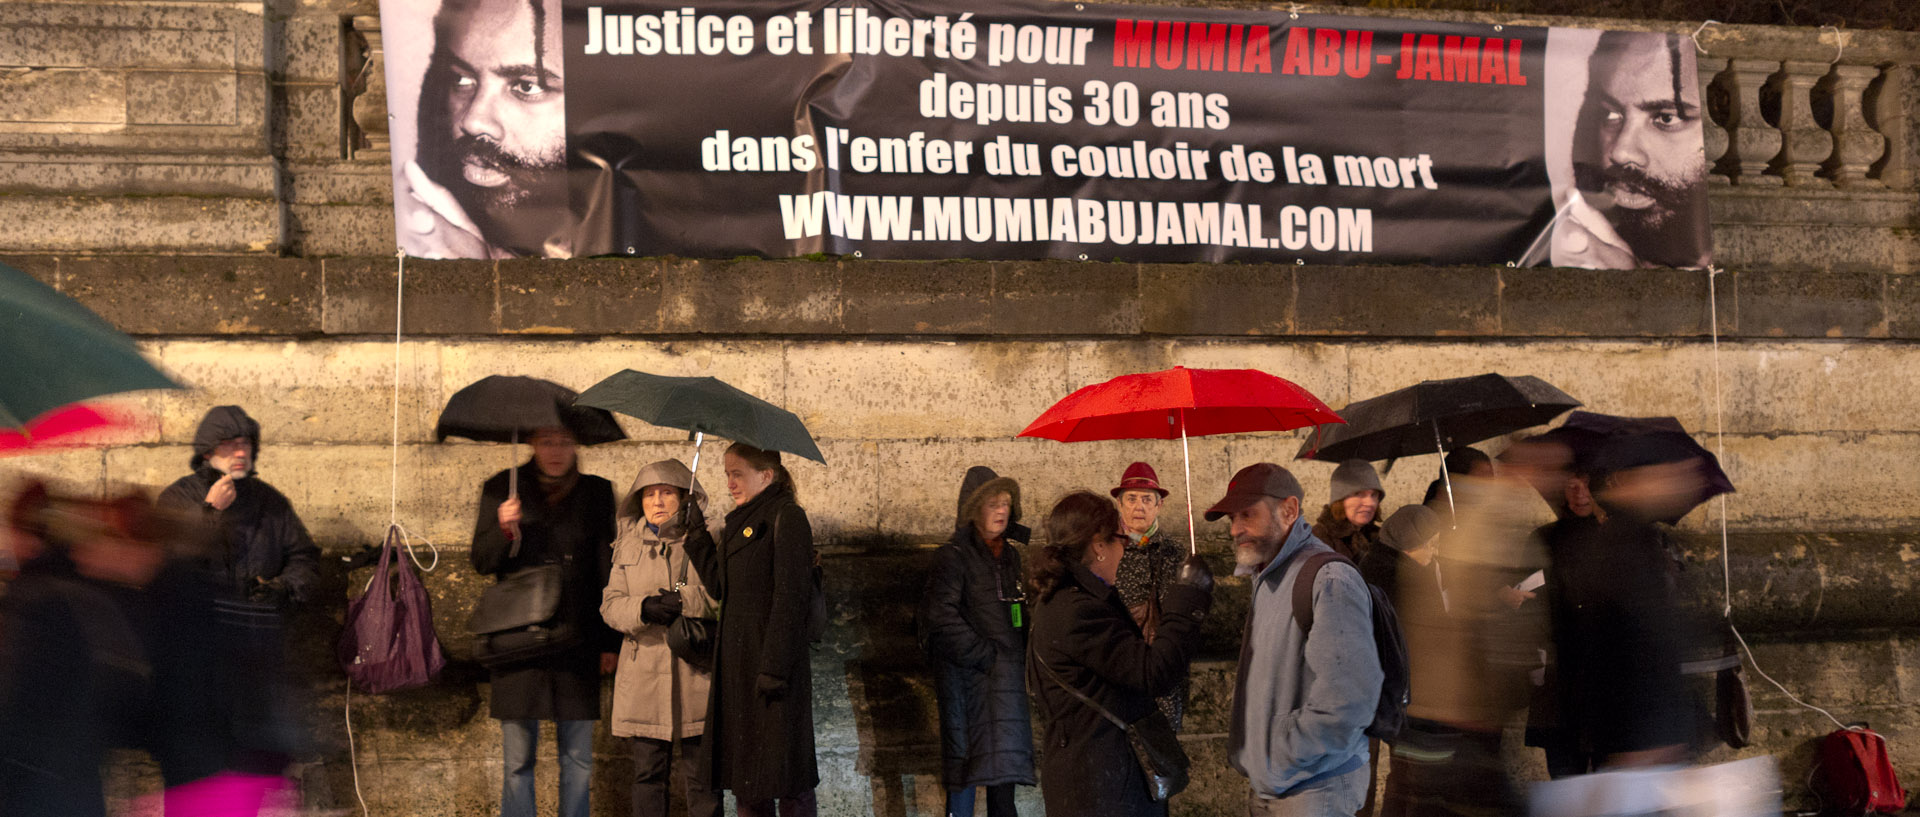 Manifestation en faveur de Mumia Abu-Jamal, place de la Concorde, à Paris.